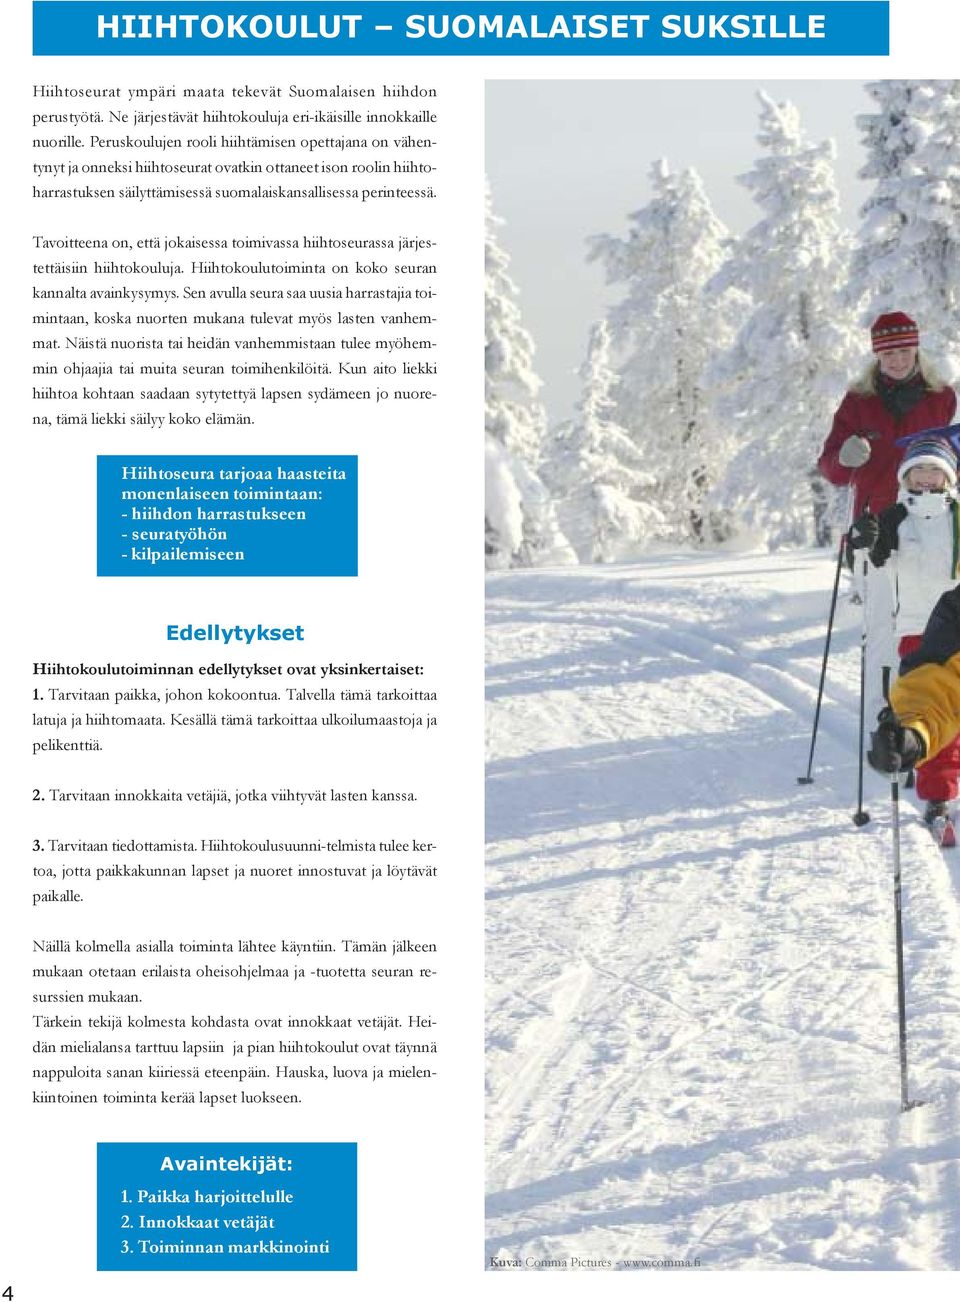 Tavoitteena on, että jokaisessa toimivassa hiihtoseurassa järjestettäisiin hiihtokouluja. Hiihtokoulutoiminta on koko seuran kannalta avainkysymys.